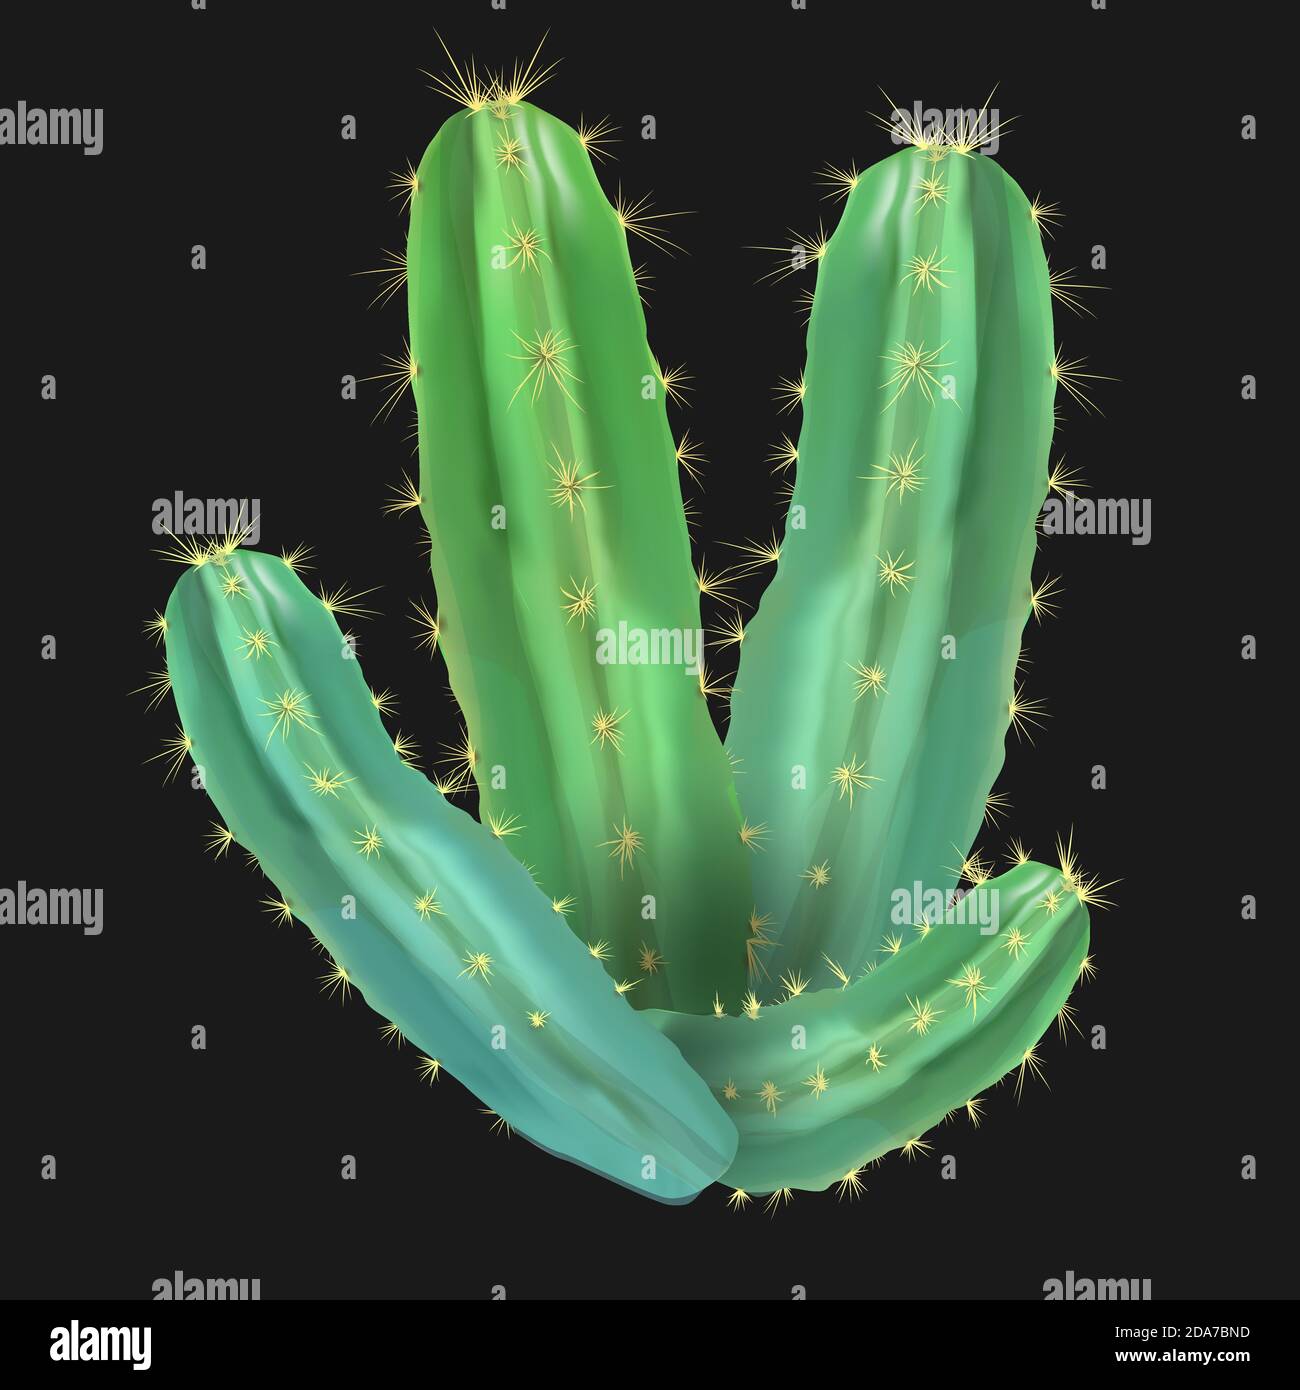 Realistico deserto cactus pera di prickly. Illustrazione Vettoriale